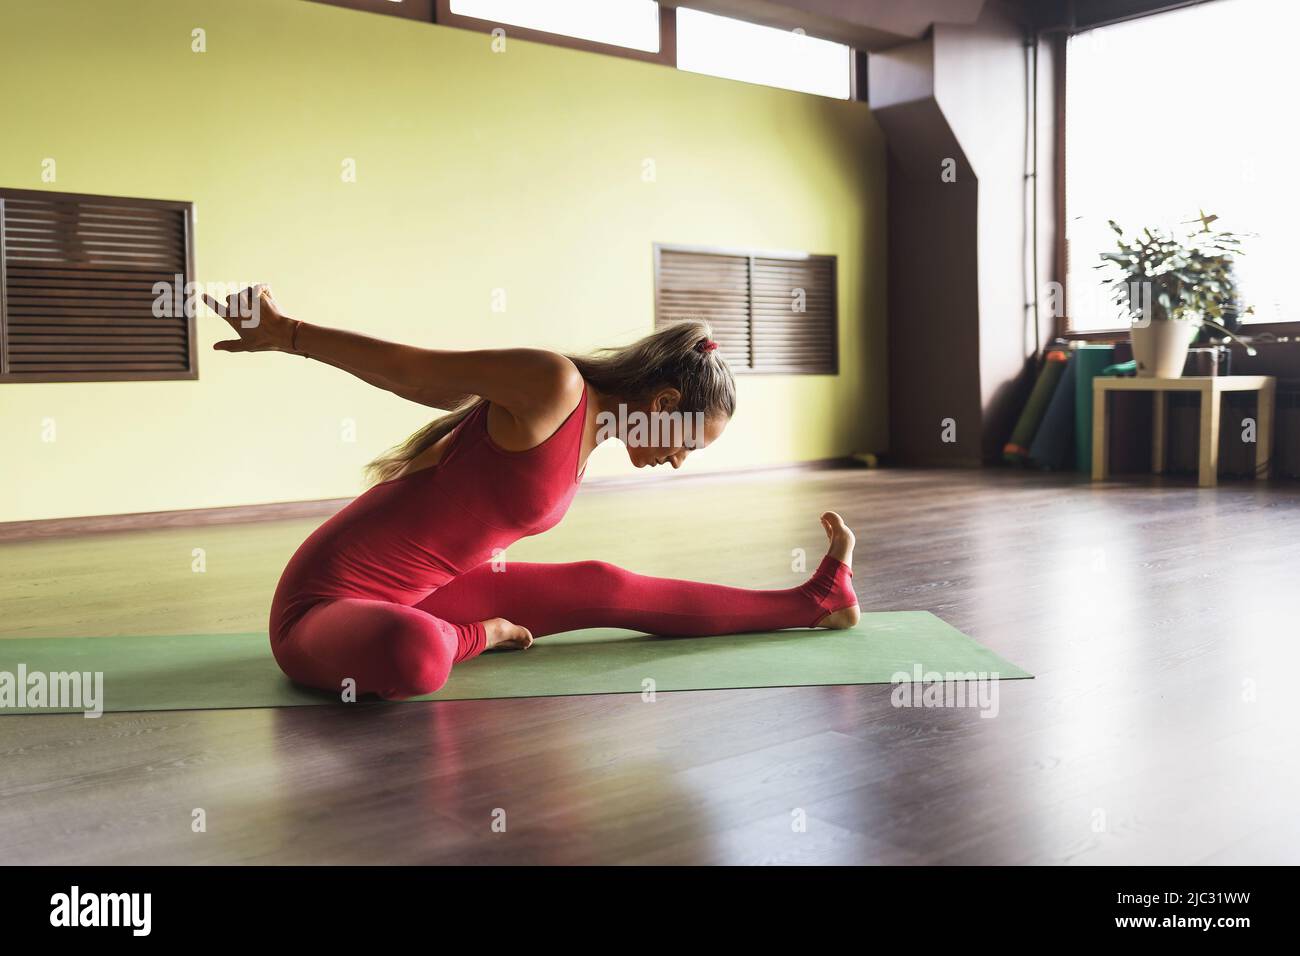 Una practicante de yoga realiza una variante del ejercicio Prasarita padottanasana, doblándose hacia delante con los brazos extendidos detrás de su espalda, sentada Foto de stock